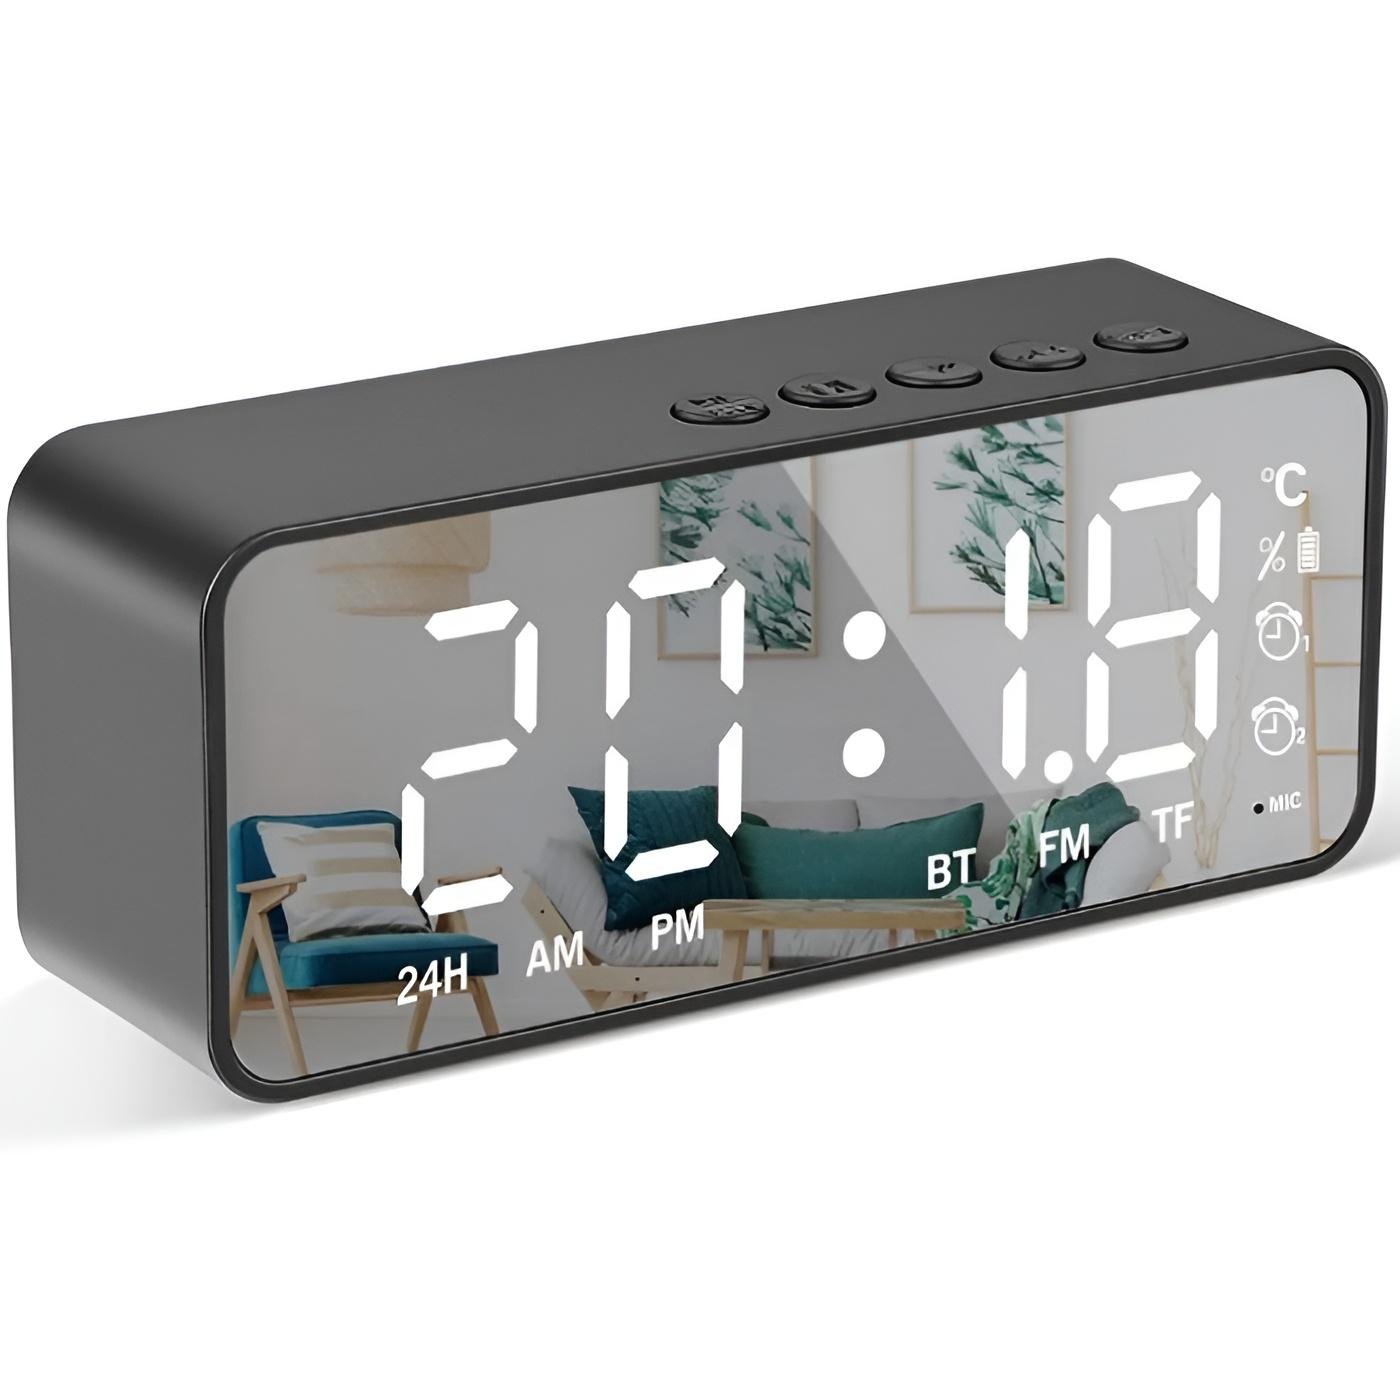 reloj despertador con cargador inalambrico para celular ay-21